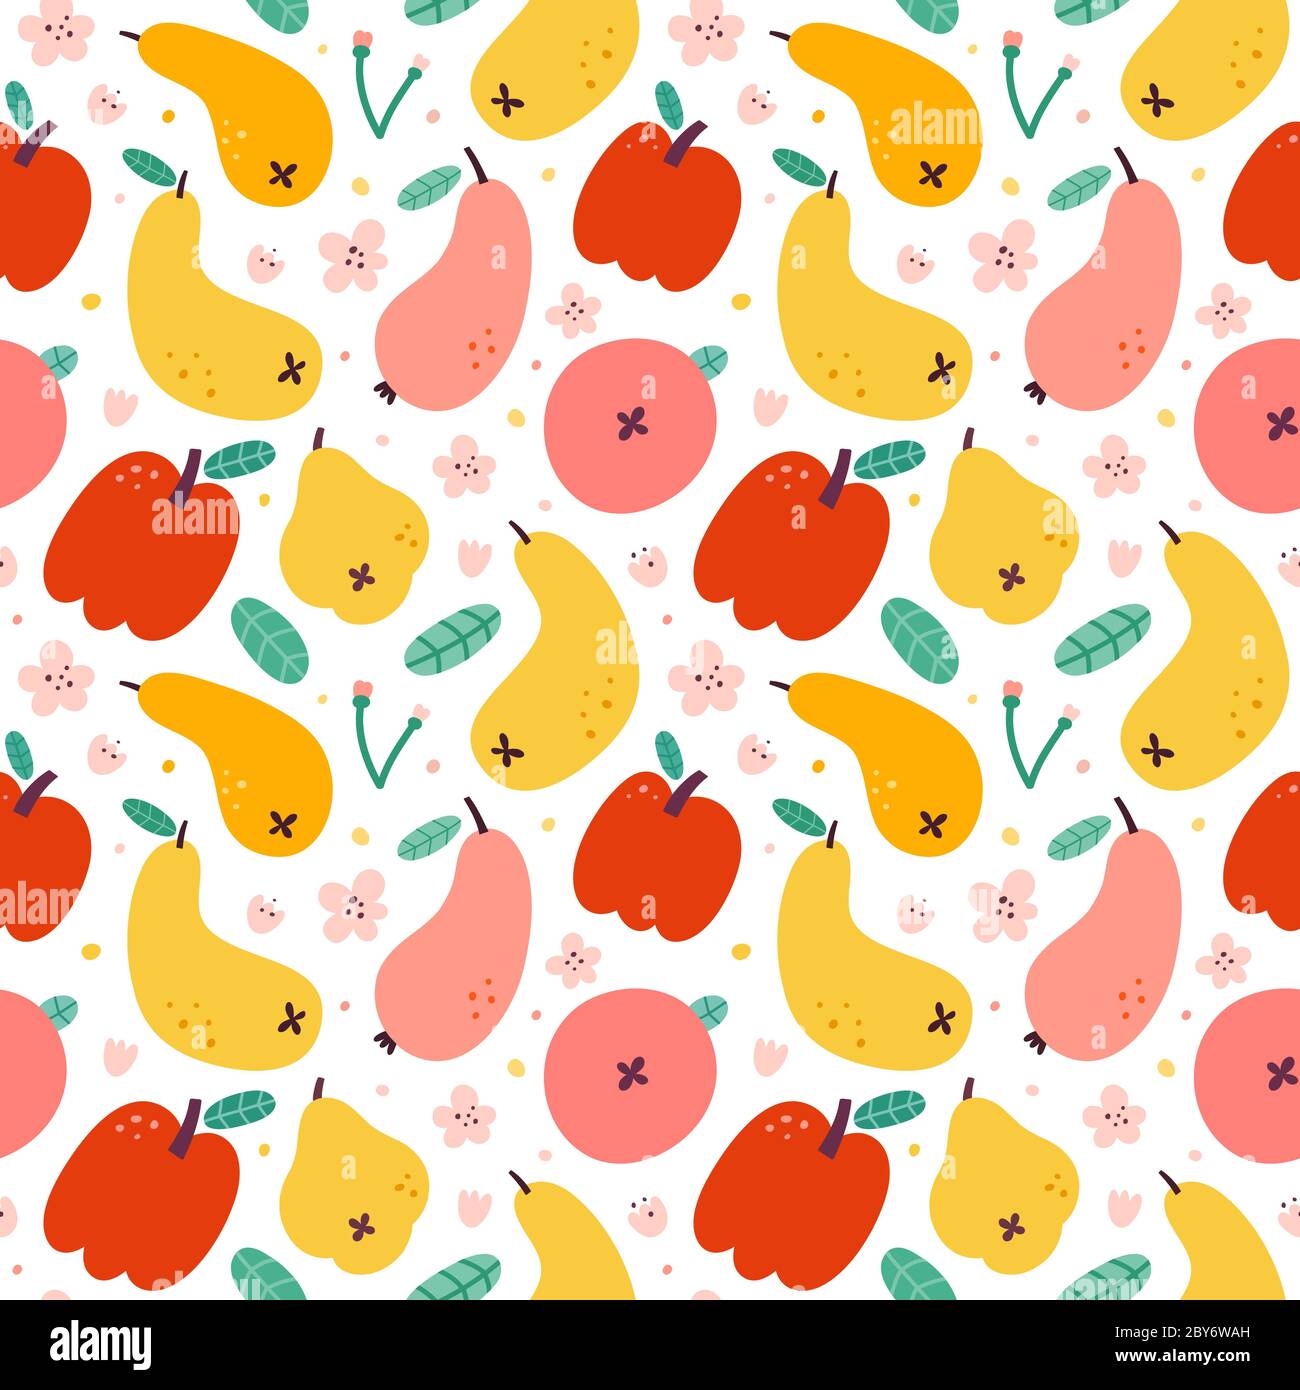 Apfelbirne Fruit Muster, hellen Sommer-Print, nahtlose Vektor-Muster, Ornament für Küchetextilien, bunten Hintergrund, frische süße saftige Früchte Stock Vektor